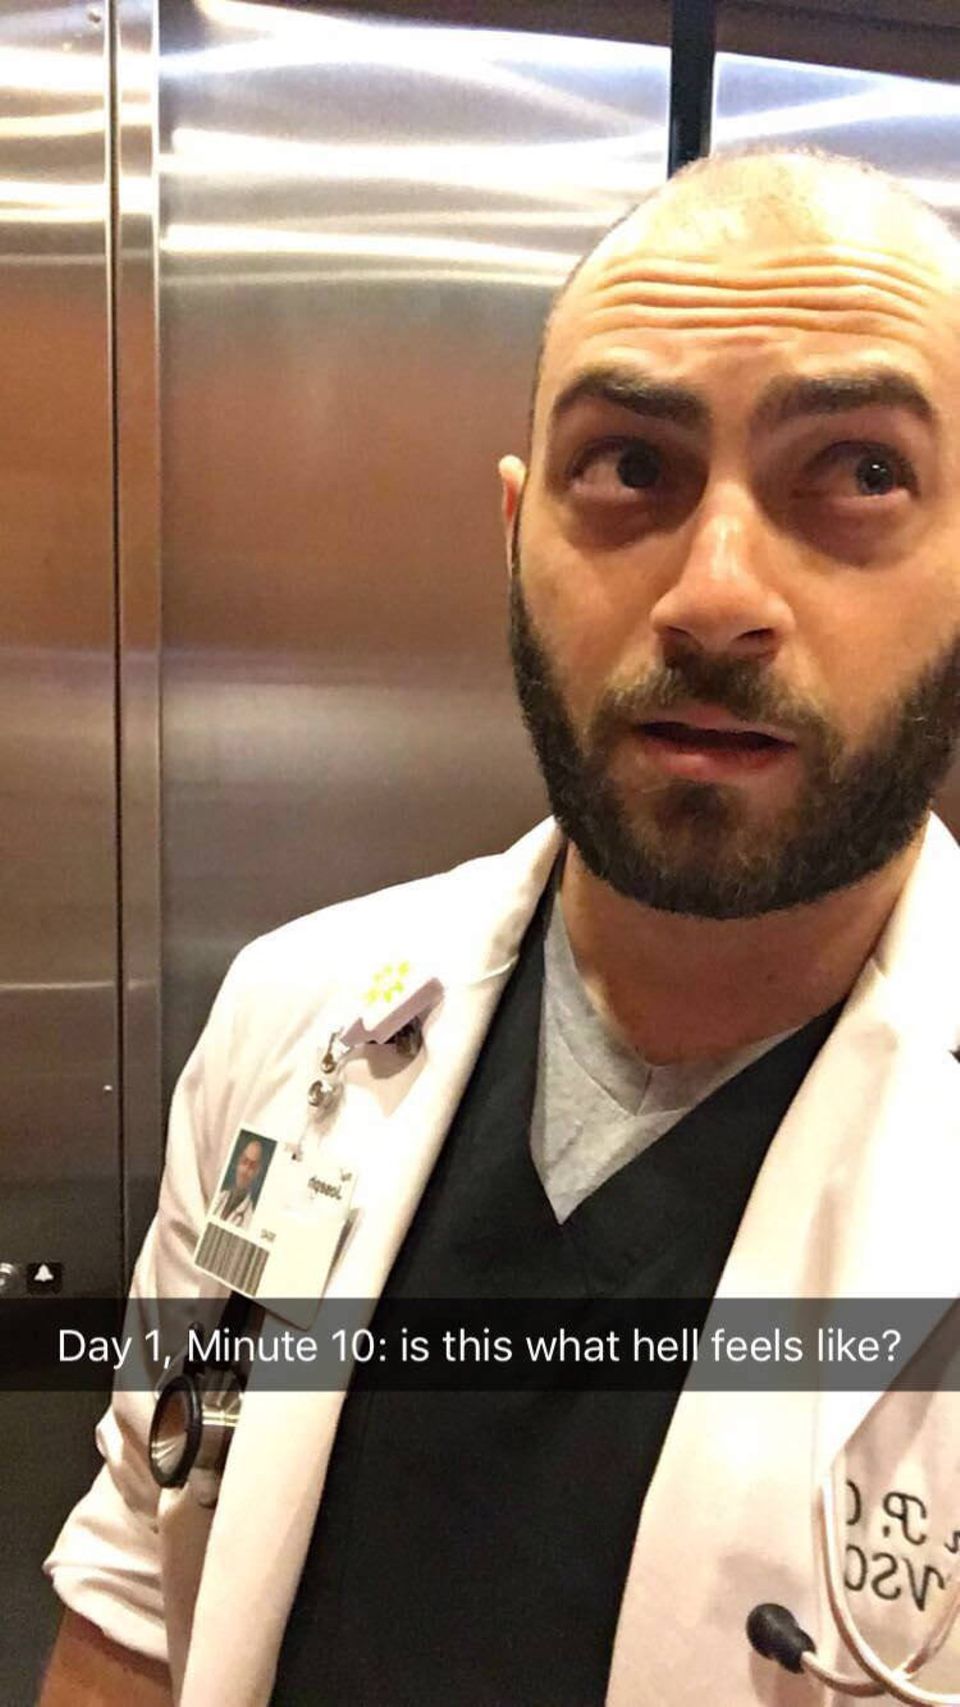 "Fühlt sich so die Hölle an?": Medizinstudent bleibt vor erster OP im Lift stecken und postet köstliche Fotos seiner "Gefangenschaft"